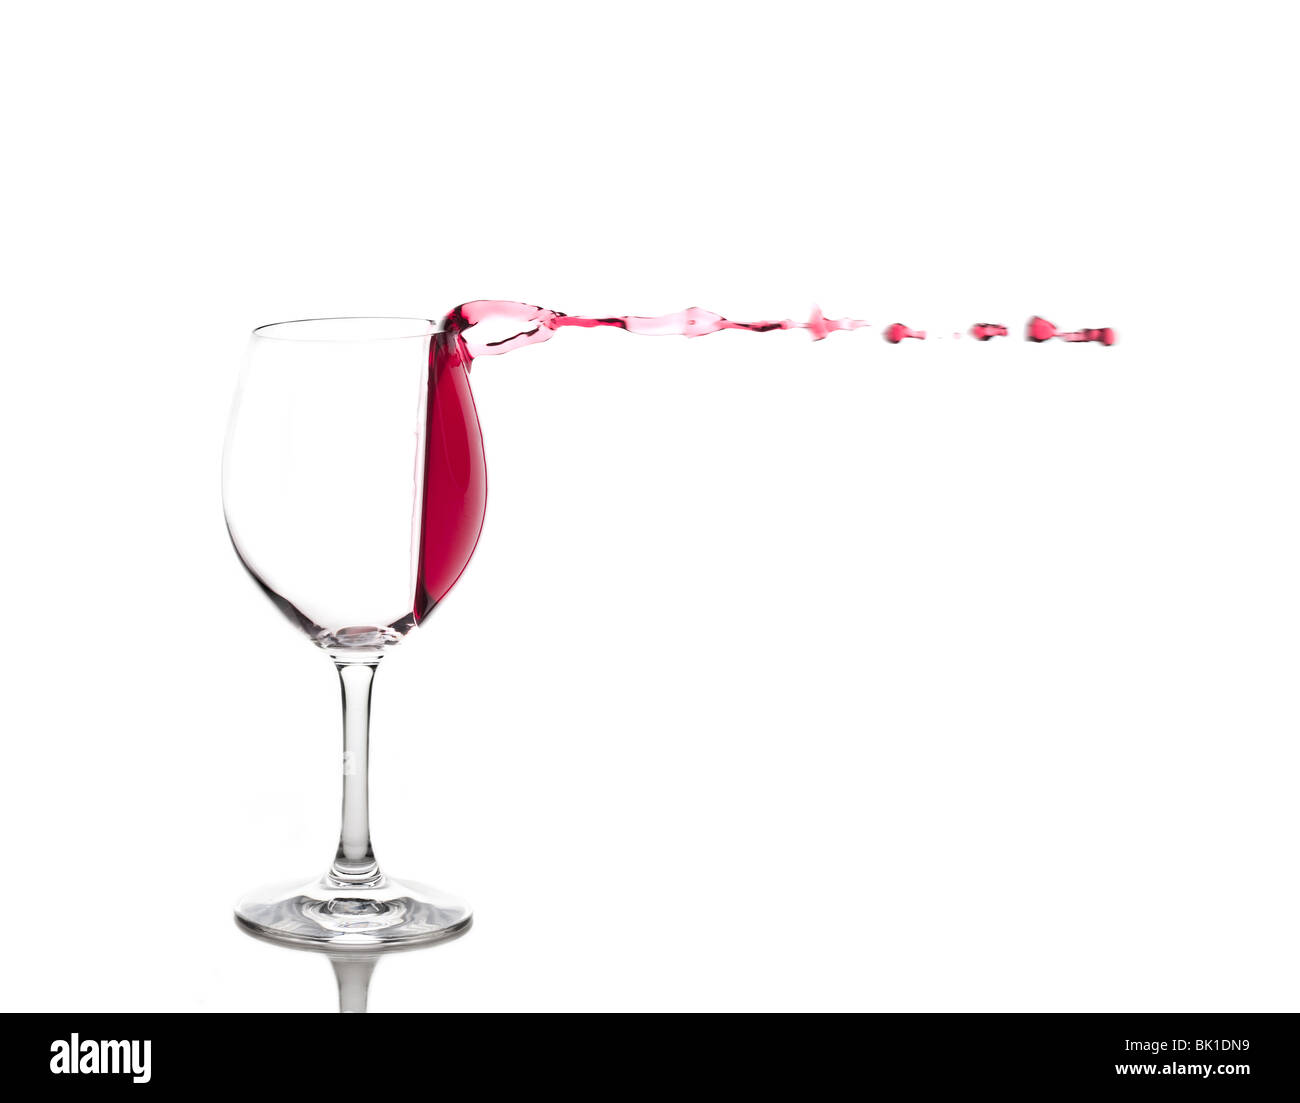 Le vin rouge s'échapper le verre de vin Banque D'Images